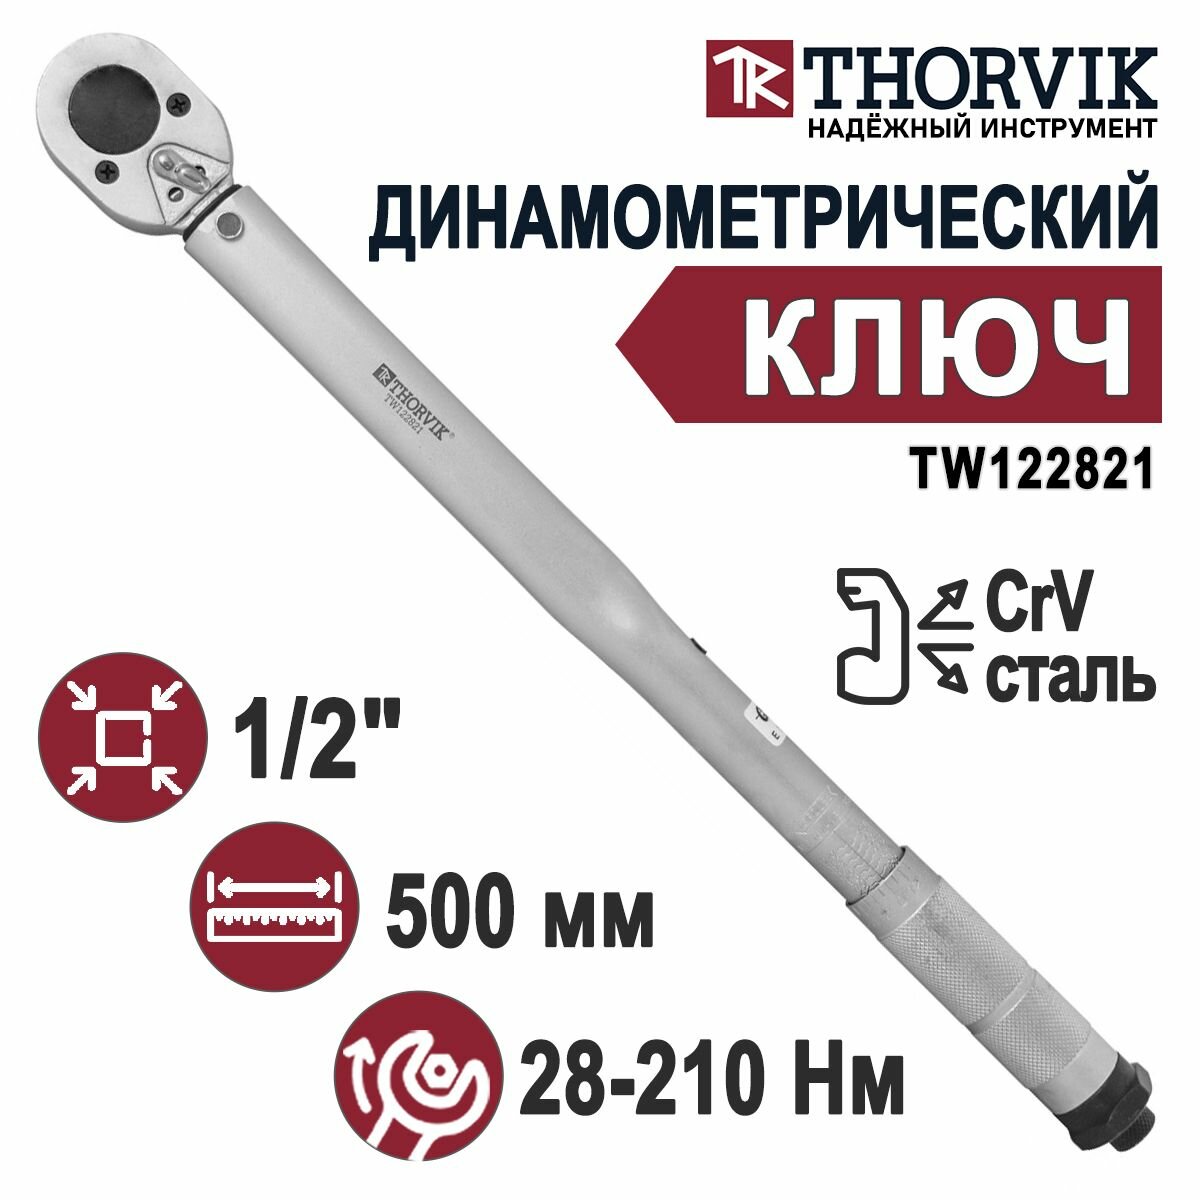 Динамометрический ключ THORVIK TW122821 1/2"DR 28-210 Нм с трещеткой в пластиковом кейсе CrV сталь